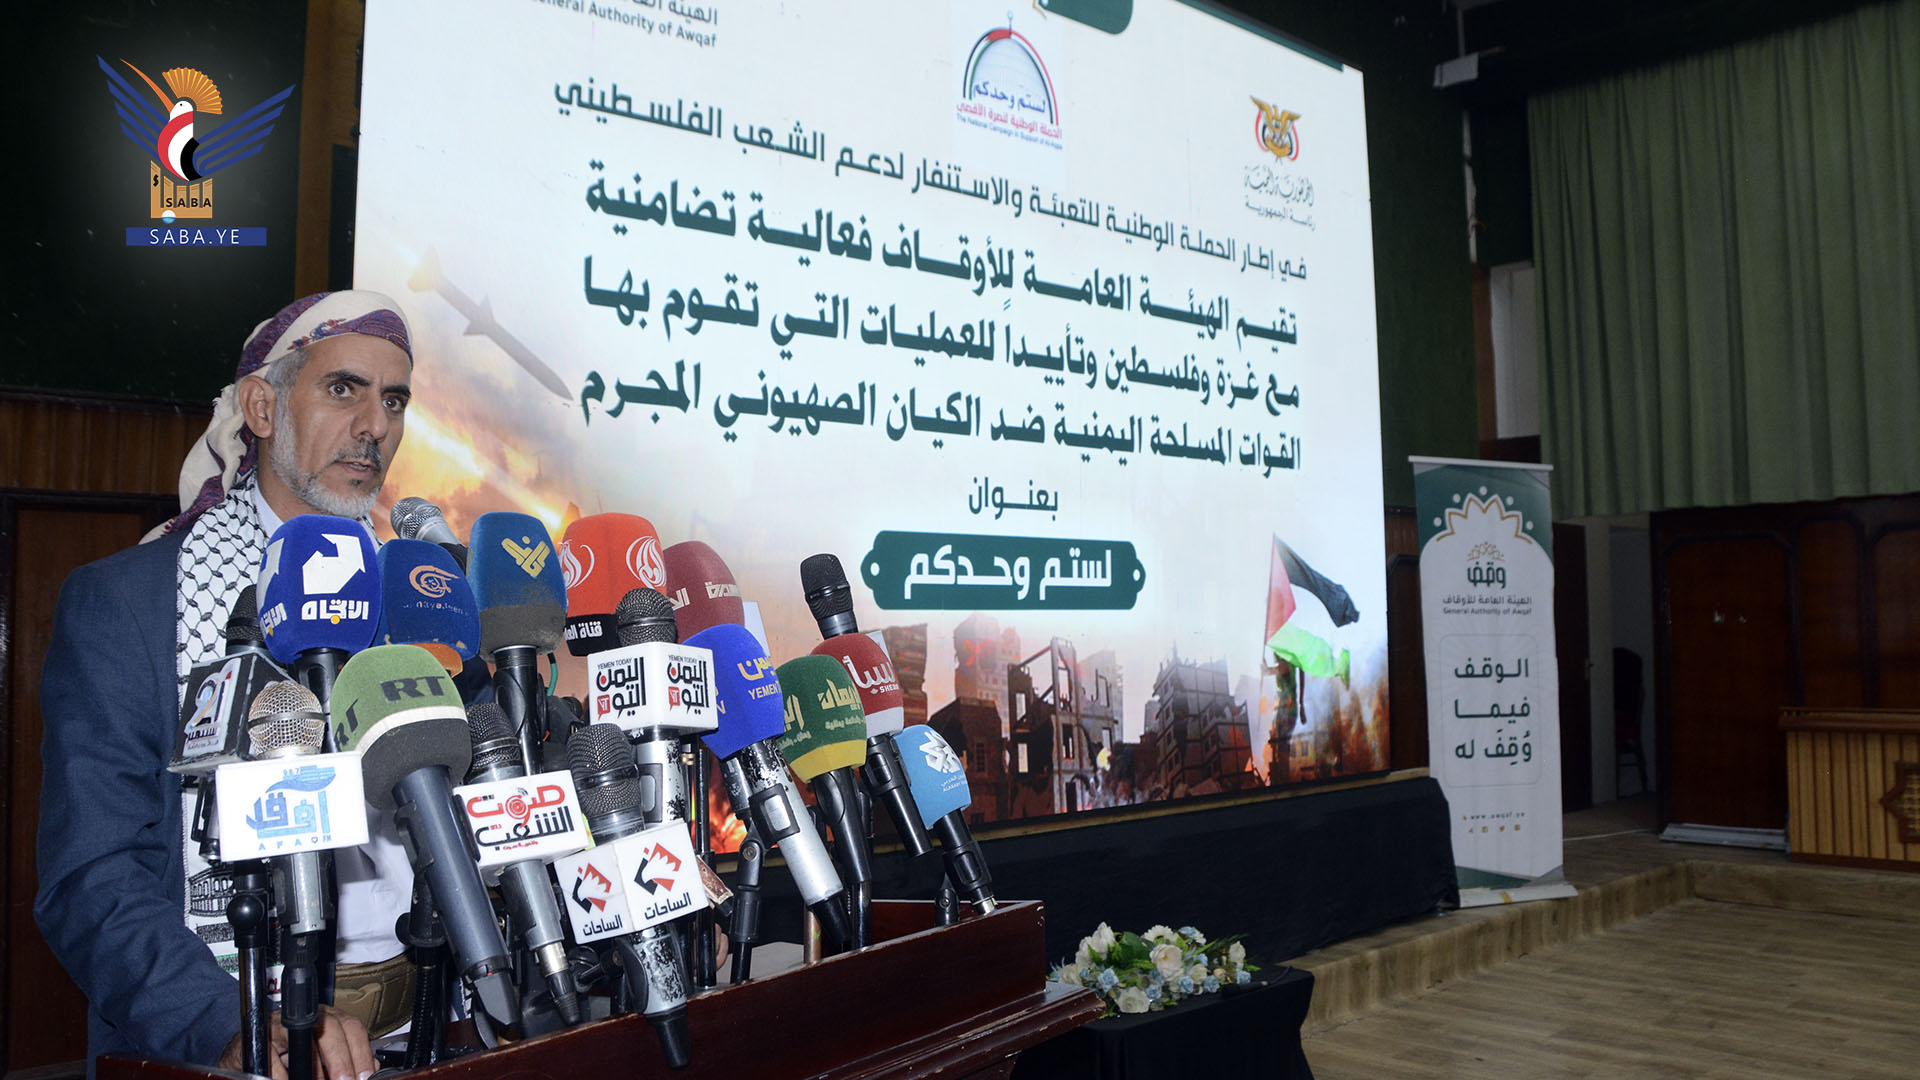 هيئة الأوقاف تنظم فعالية خطابية تضامنا مع الشعب الفلسطيني